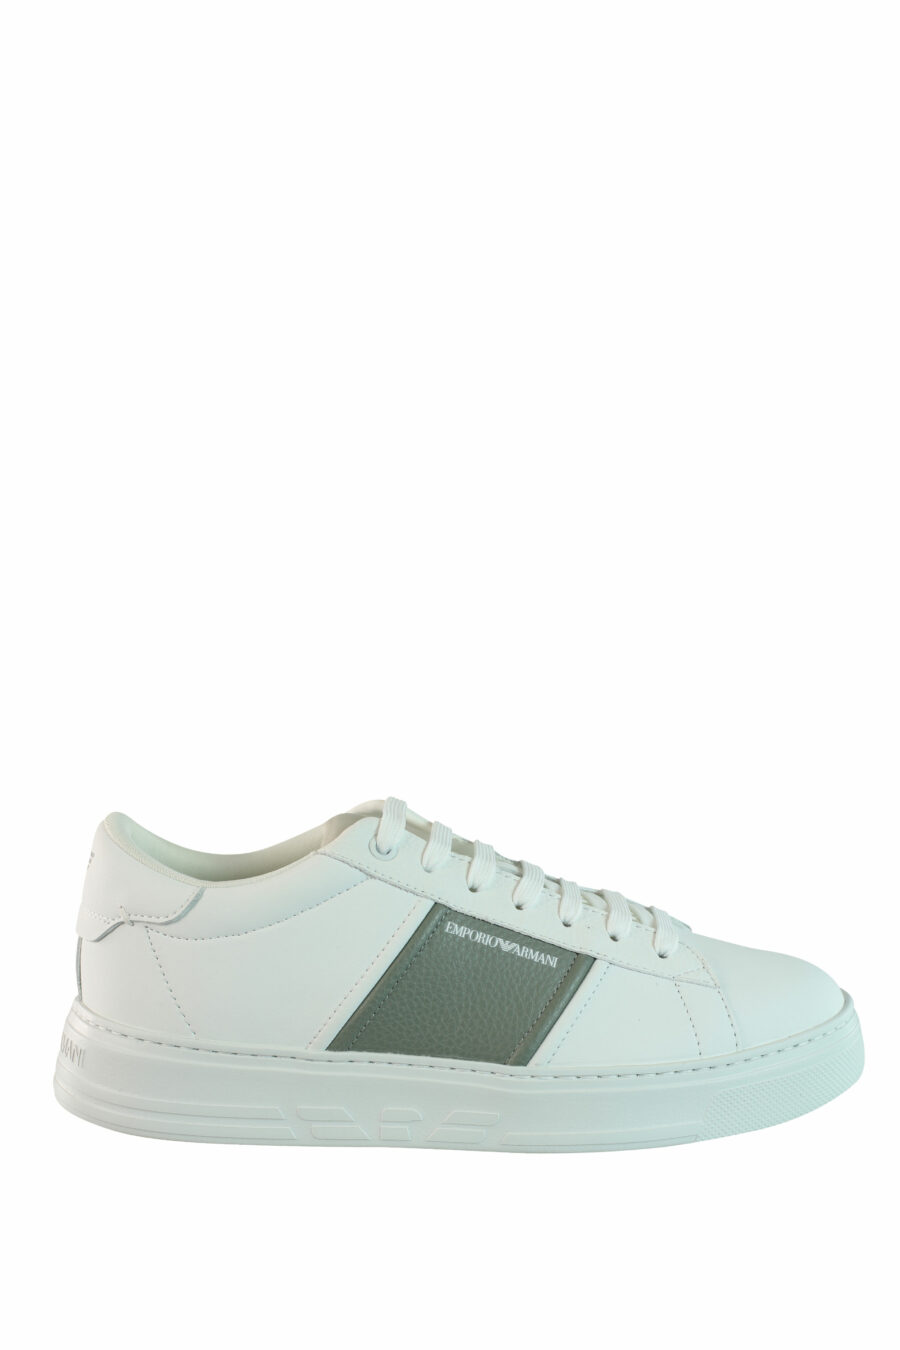 Zapatillas blancas con gris y minilogo - IMG 0897